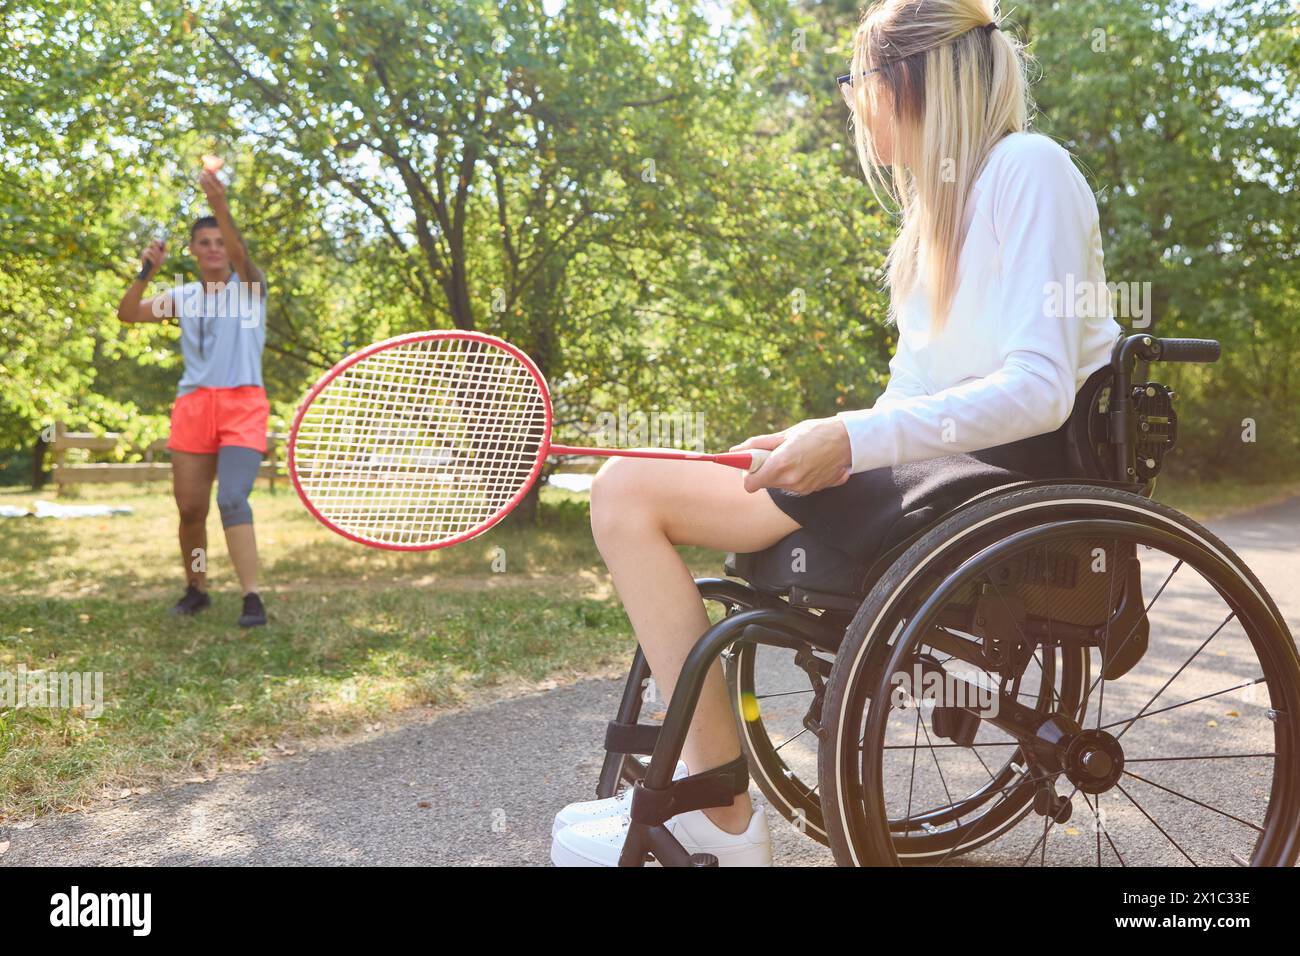 Eine Frau, die einen Rollstuhl benutzt, und ihr Freund spielt Badminton in einem Park und zeigt Freude und aktiven Lebensstil trotz körperlicher Herausforderungen. Stockfoto